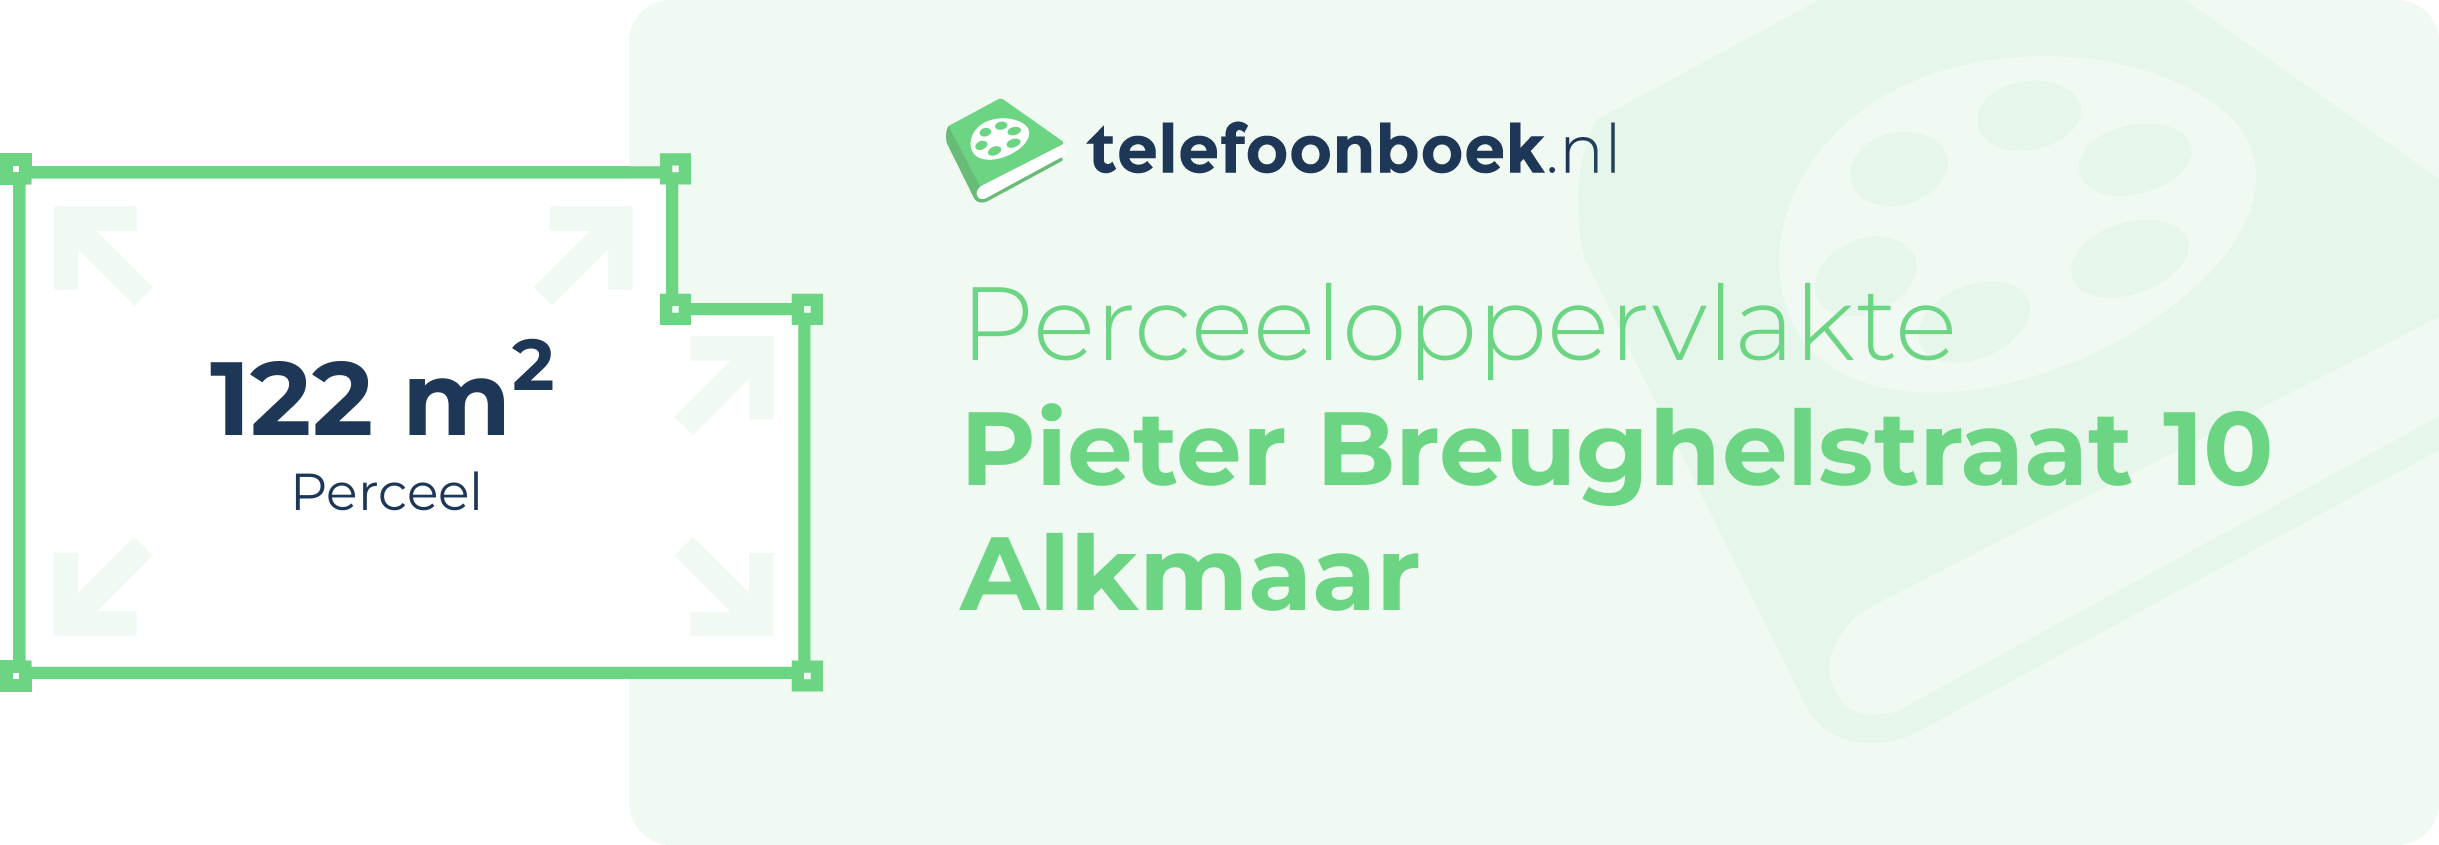 Perceeloppervlakte Pieter Breughelstraat 10 Alkmaar